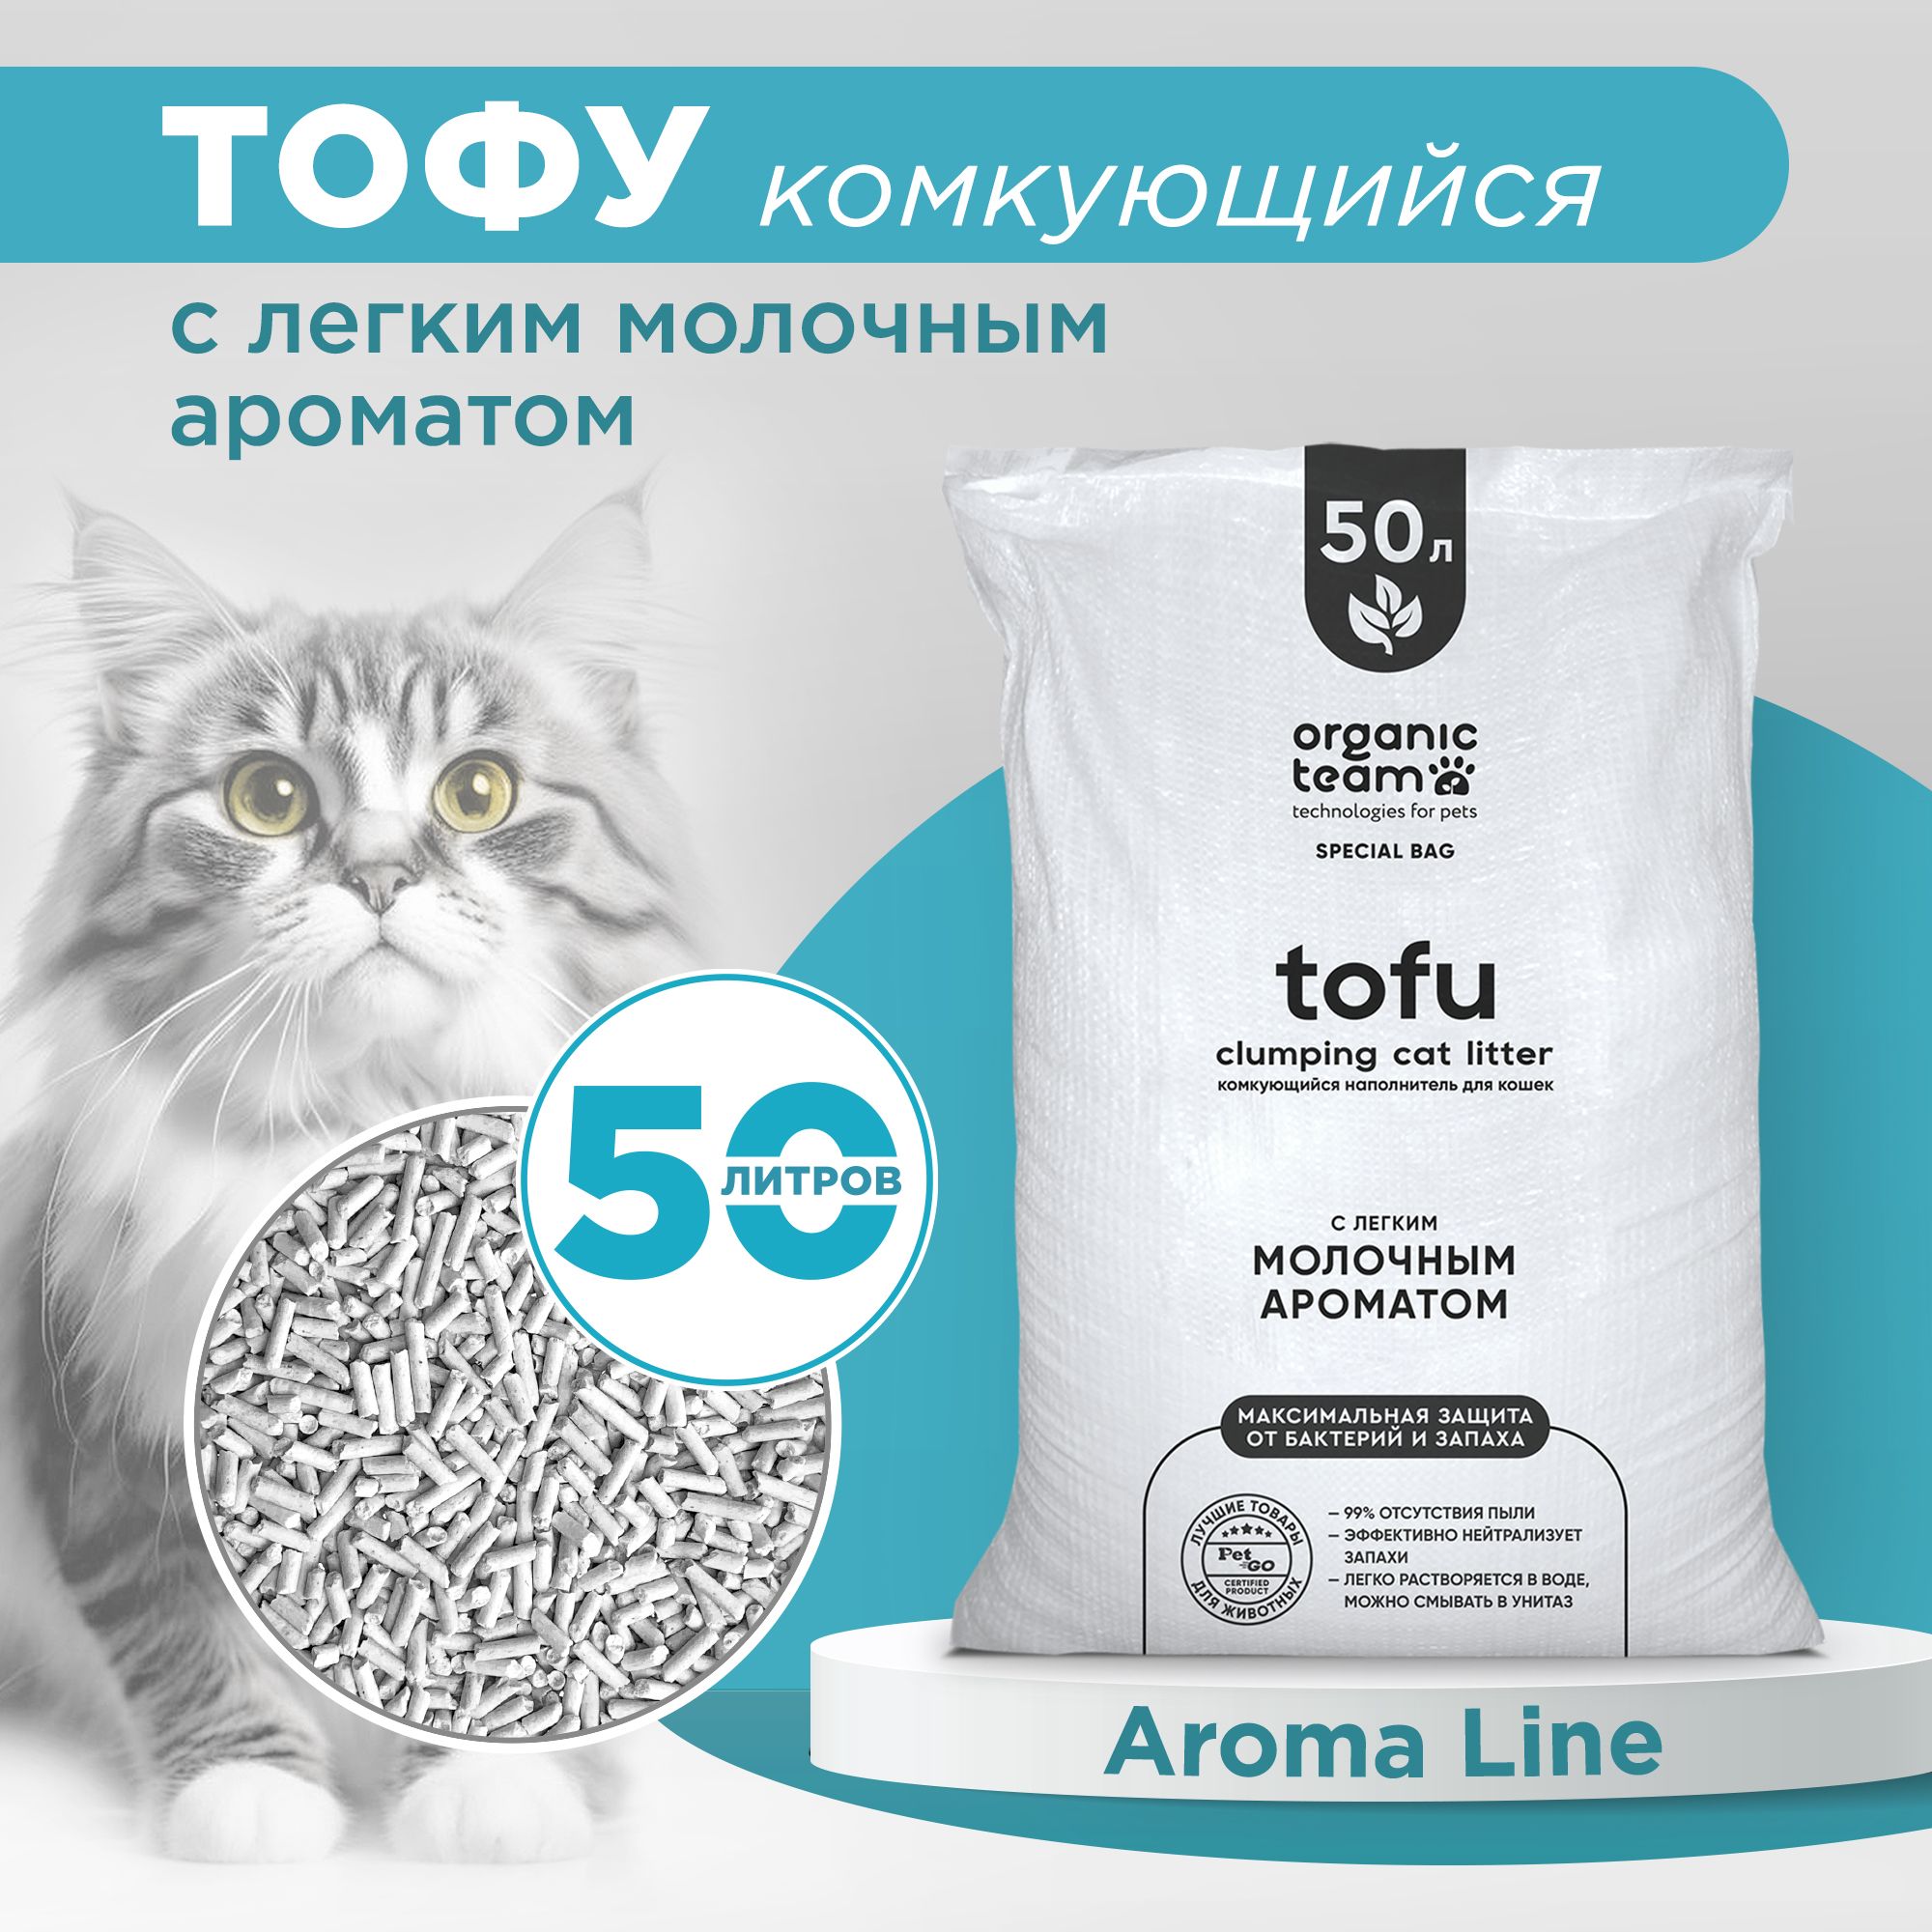 Наполнитель для кошек Organic team, тофу, комкующийся, с легким молочным ароматом, 20 кг